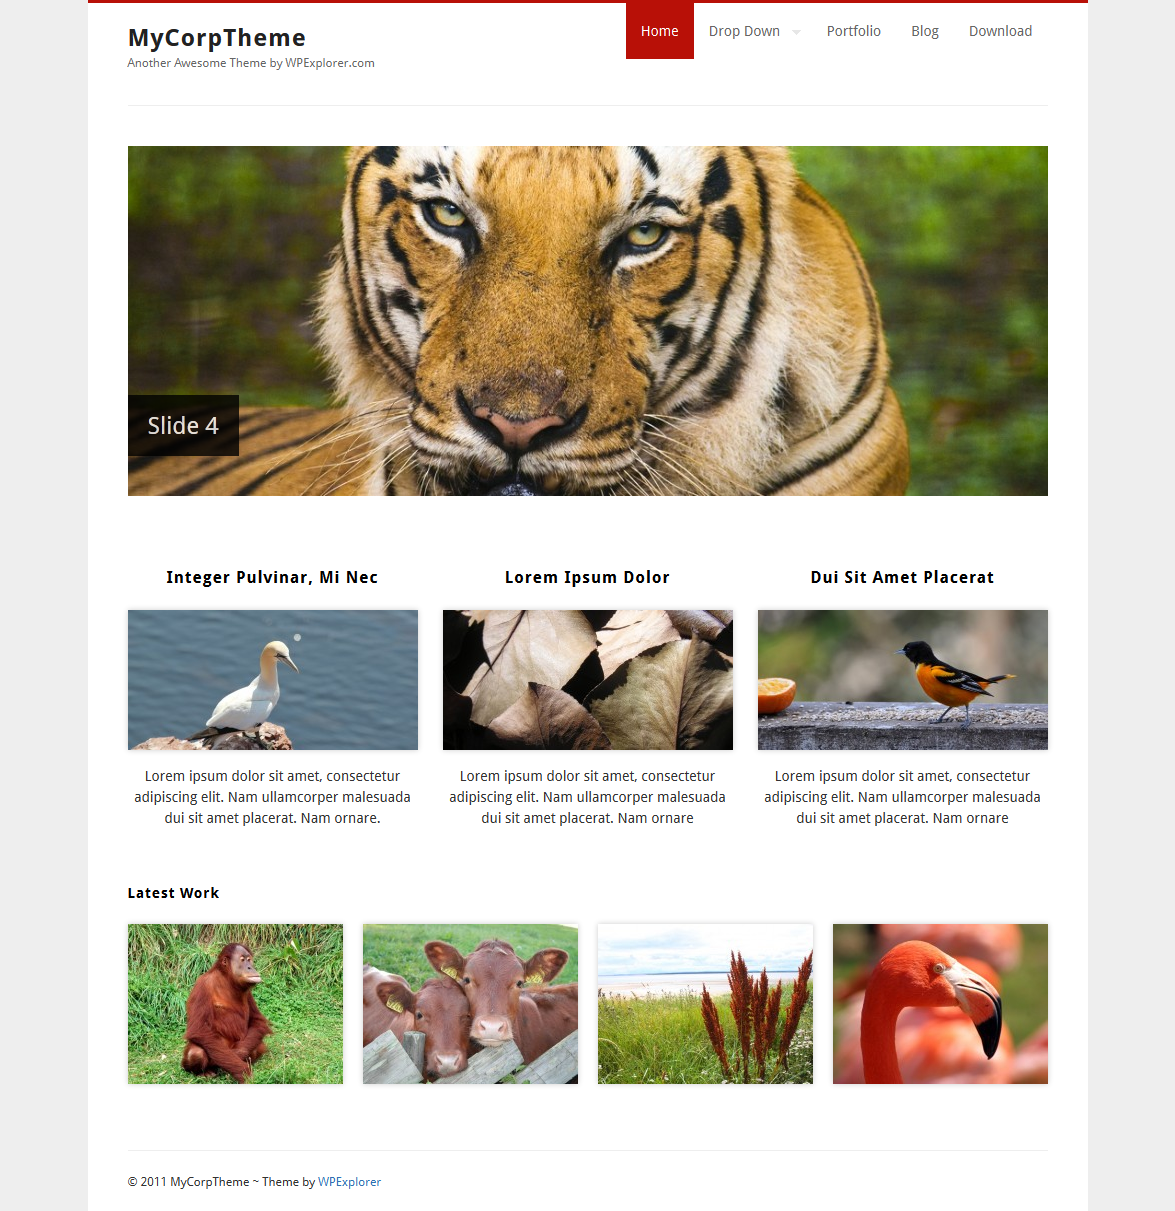 GraphicDesignJunction: 35+ Fresh WordPress Themes